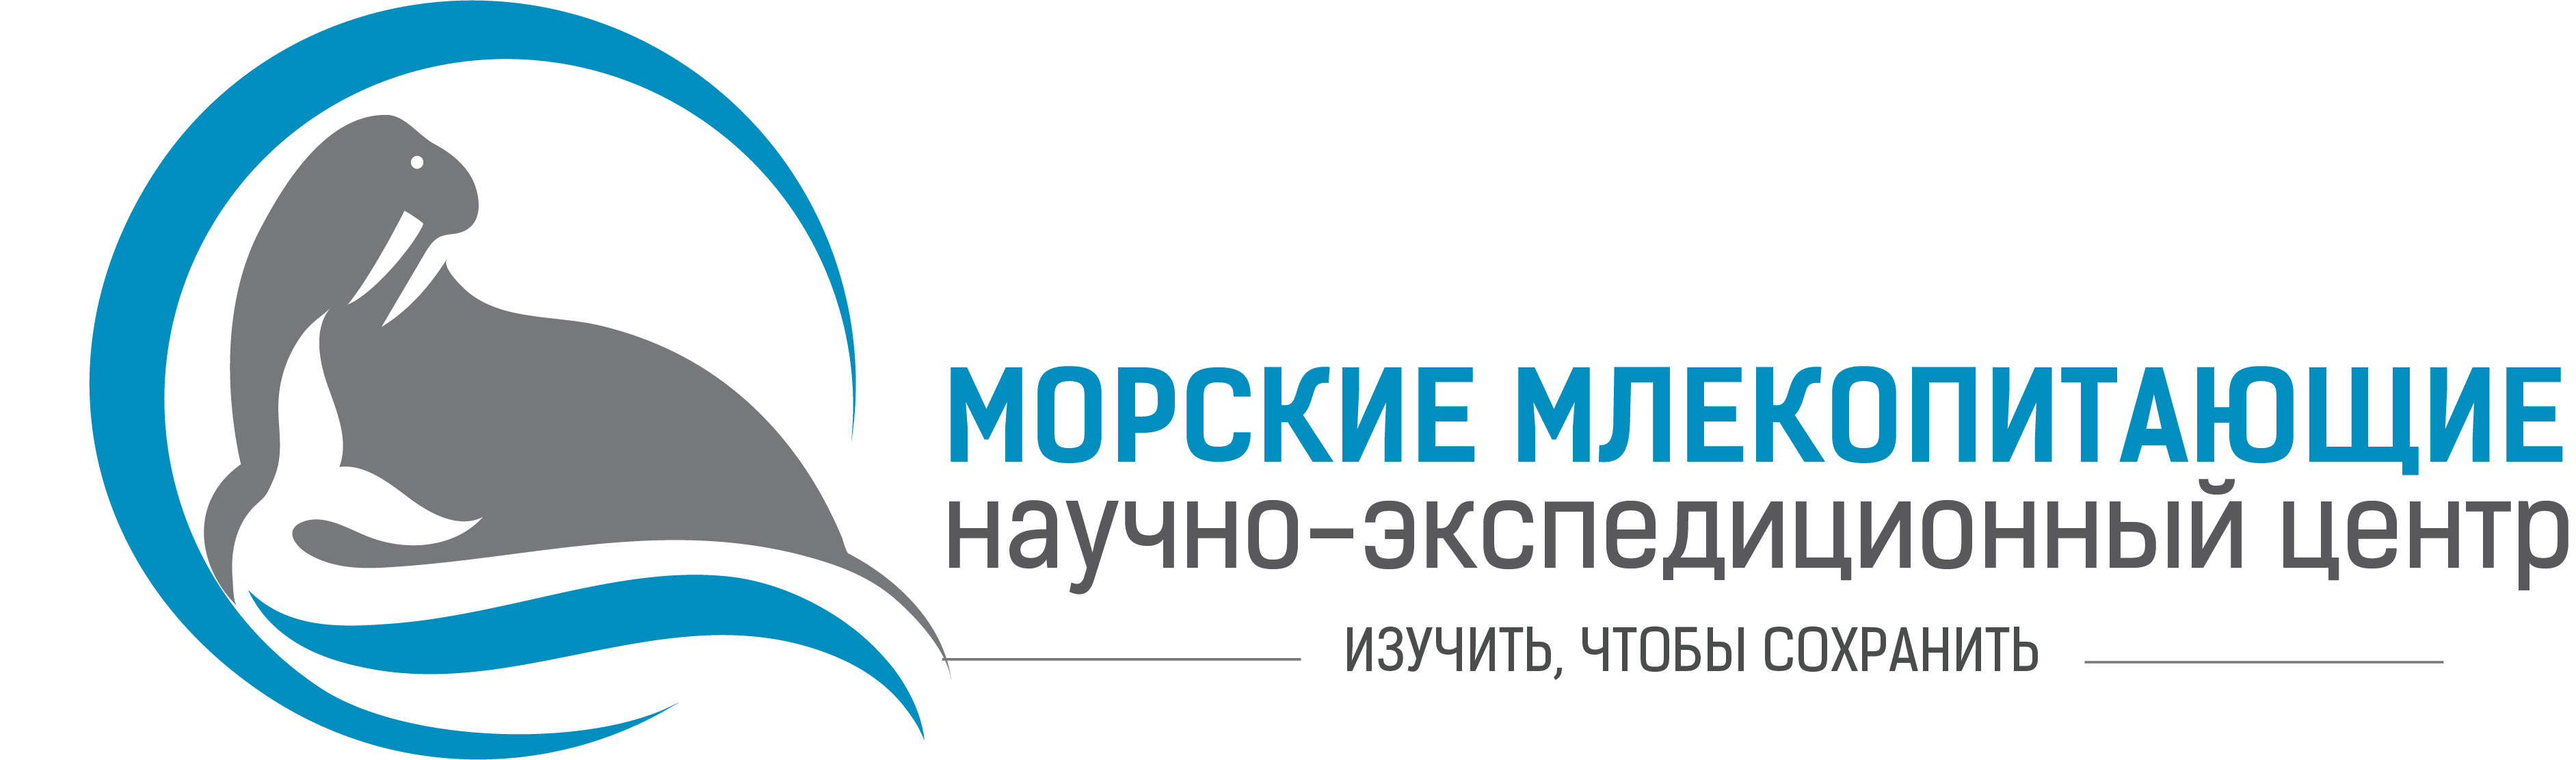 Logo_horizontal